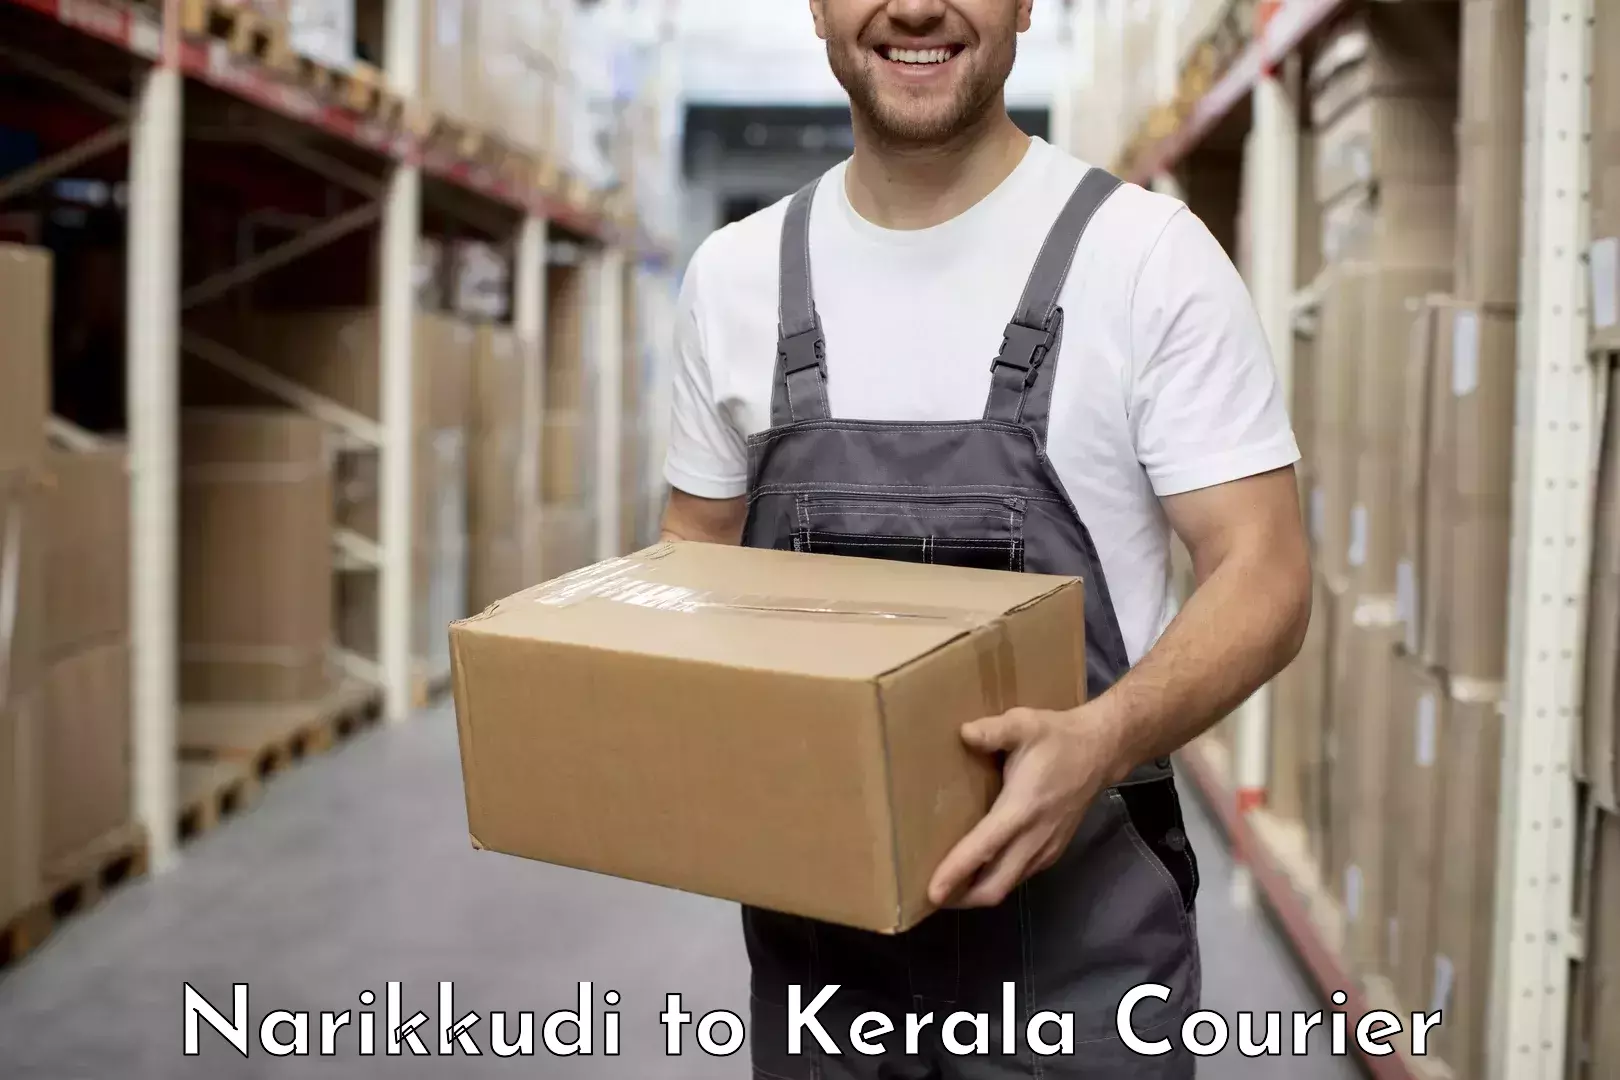 Package delivery network Narikkudi to Cherpulassery